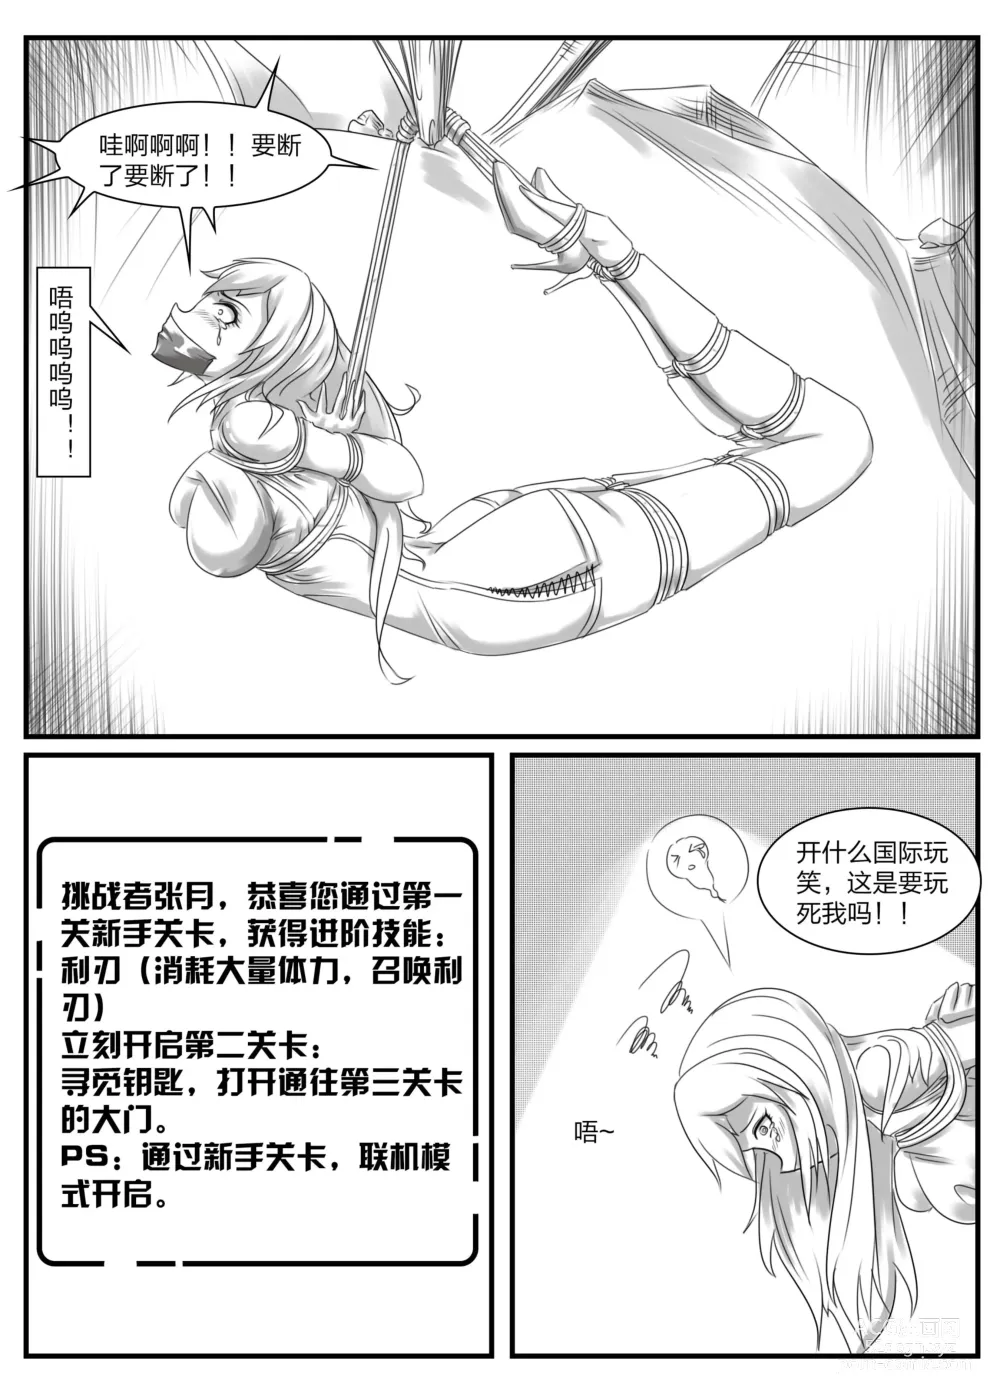 Page 8 of doujinshi 《被困游戏世界2》